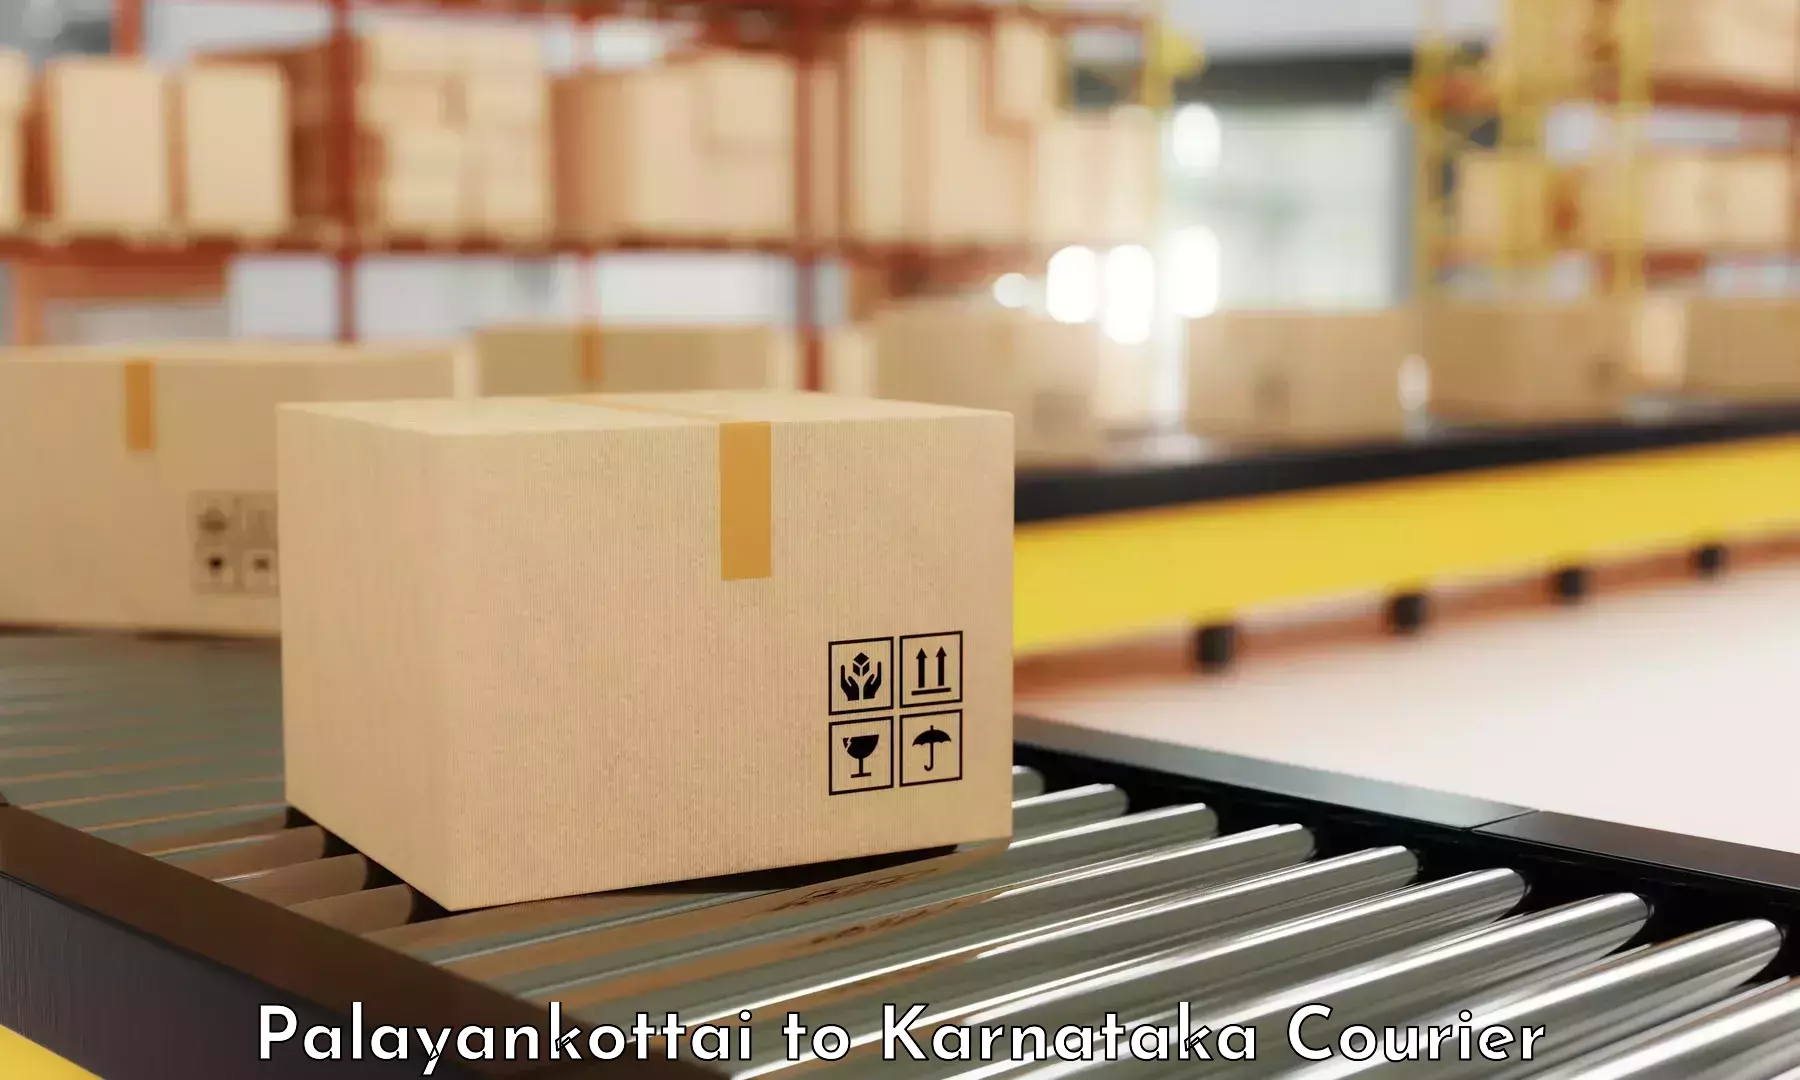 Business logistics support Palayankottai to Sringeri